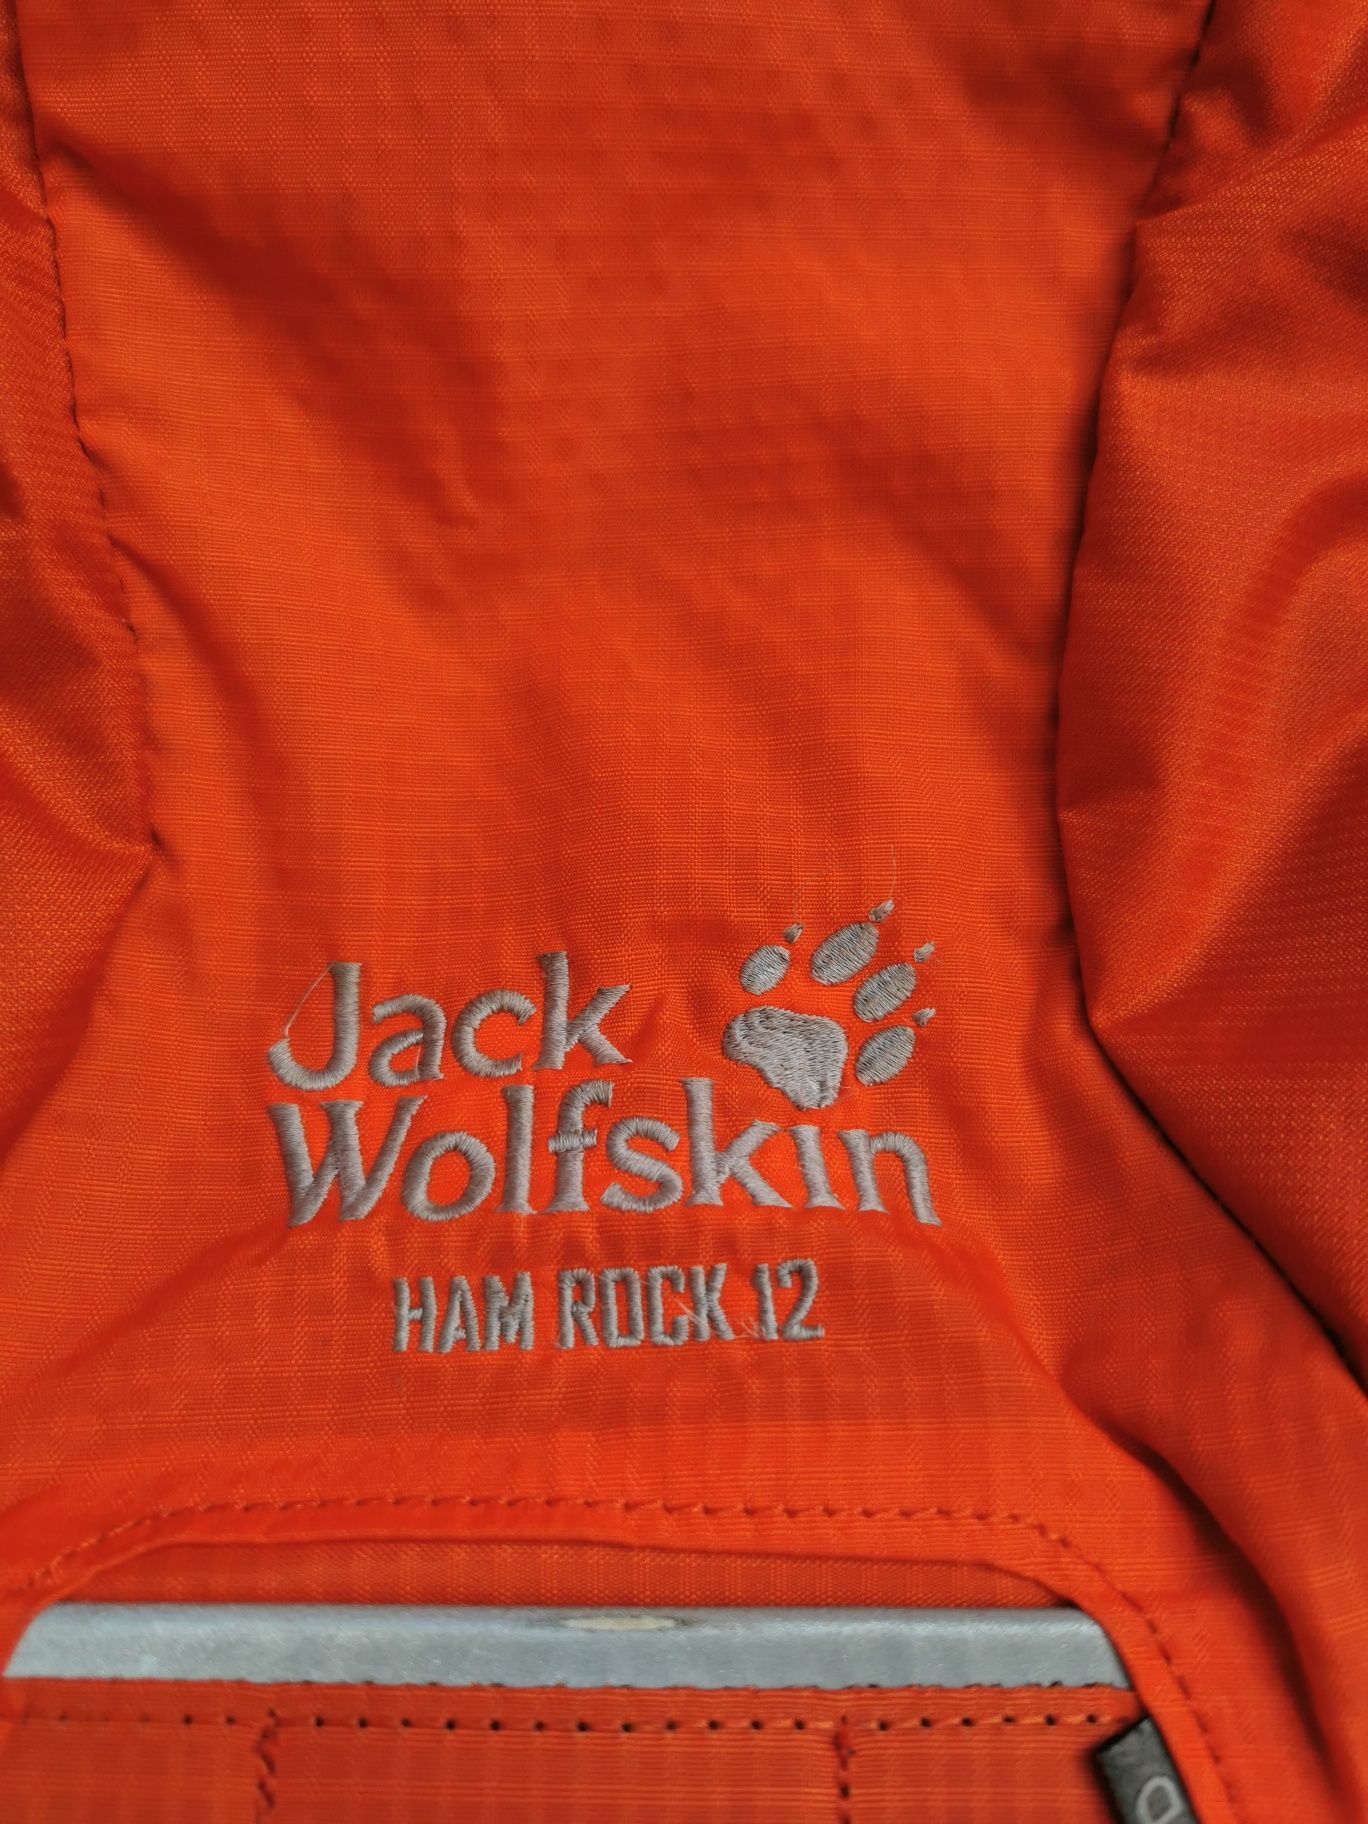 Pomarańczowy plecak Jack Wolfskin ham rock 12